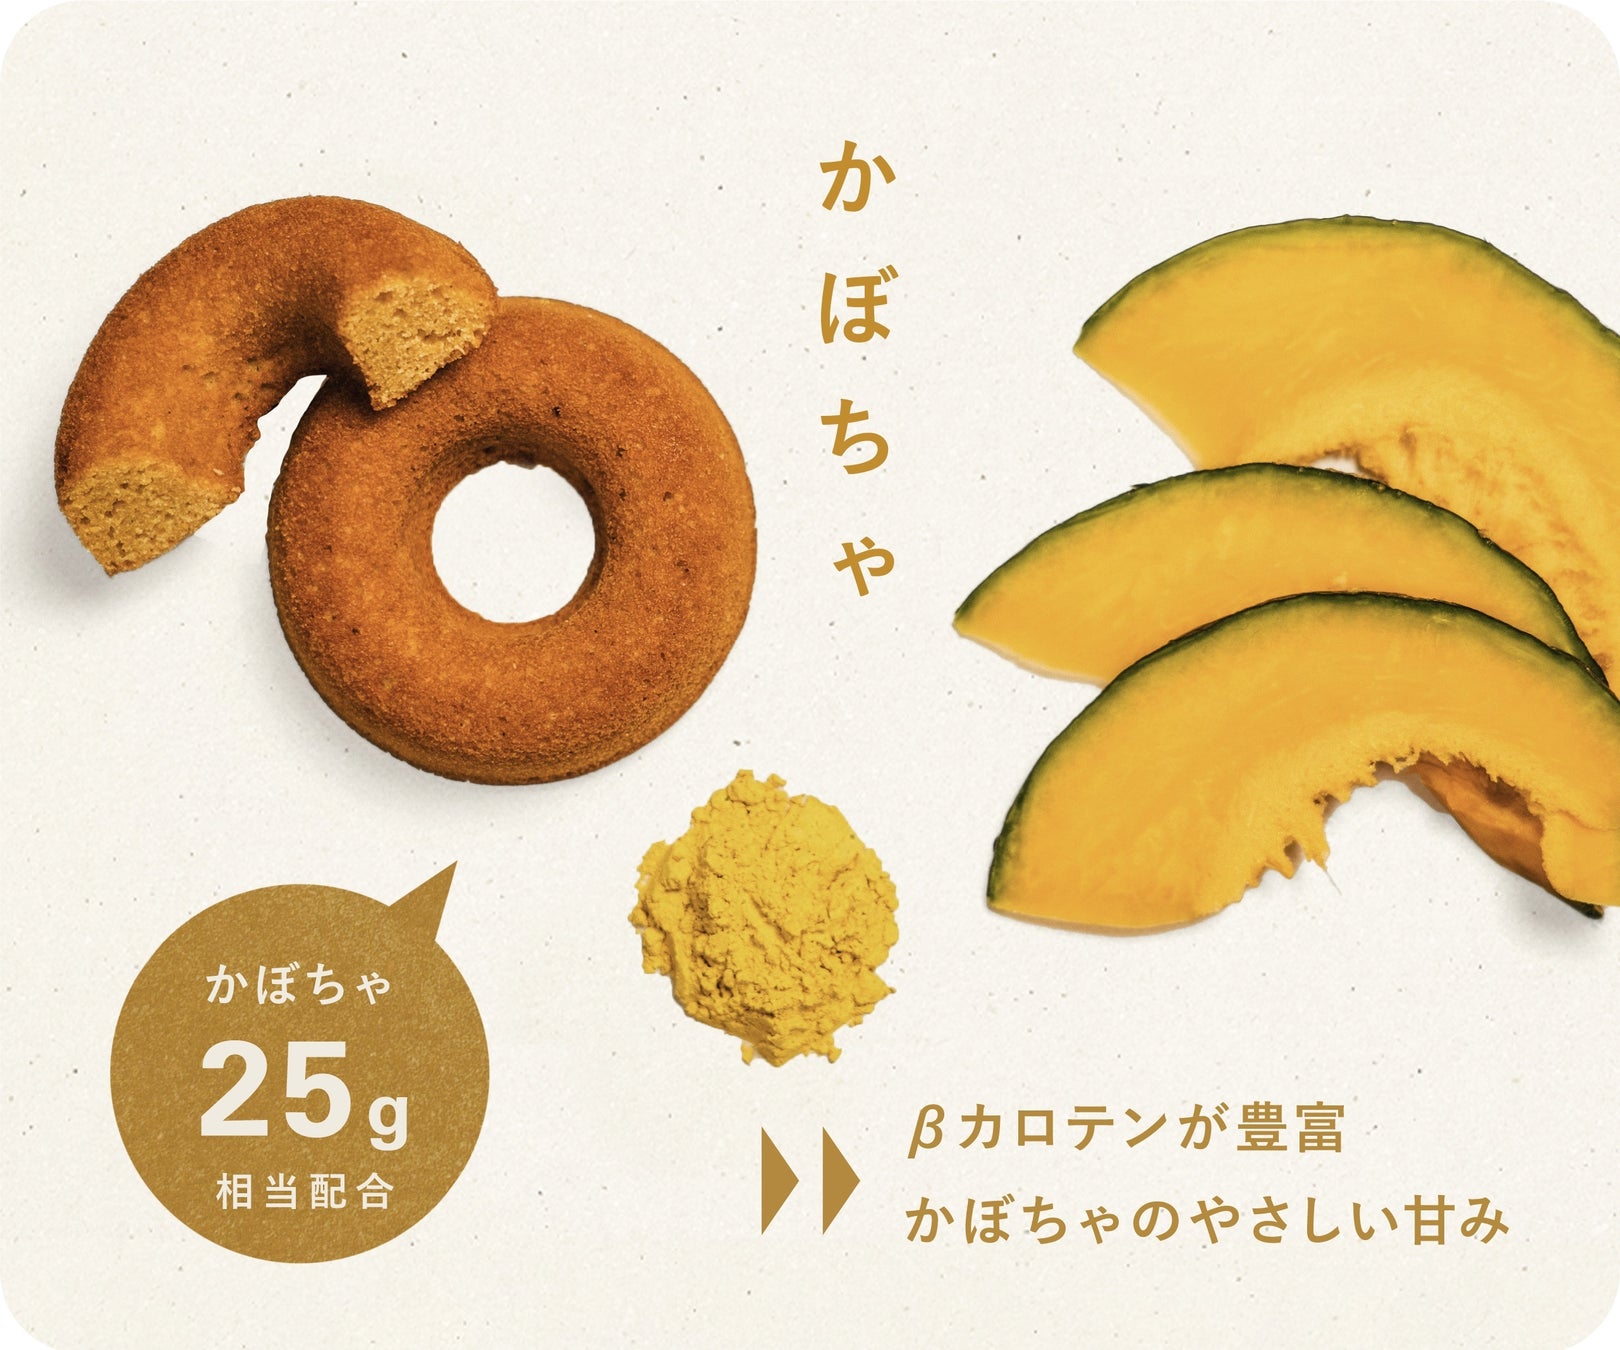 廃棄予定の規格外野菜とおからを用いたアップサイクルドーナツを開発。Makuakeにて発売開始〈OKARAT〉のサブ画像7